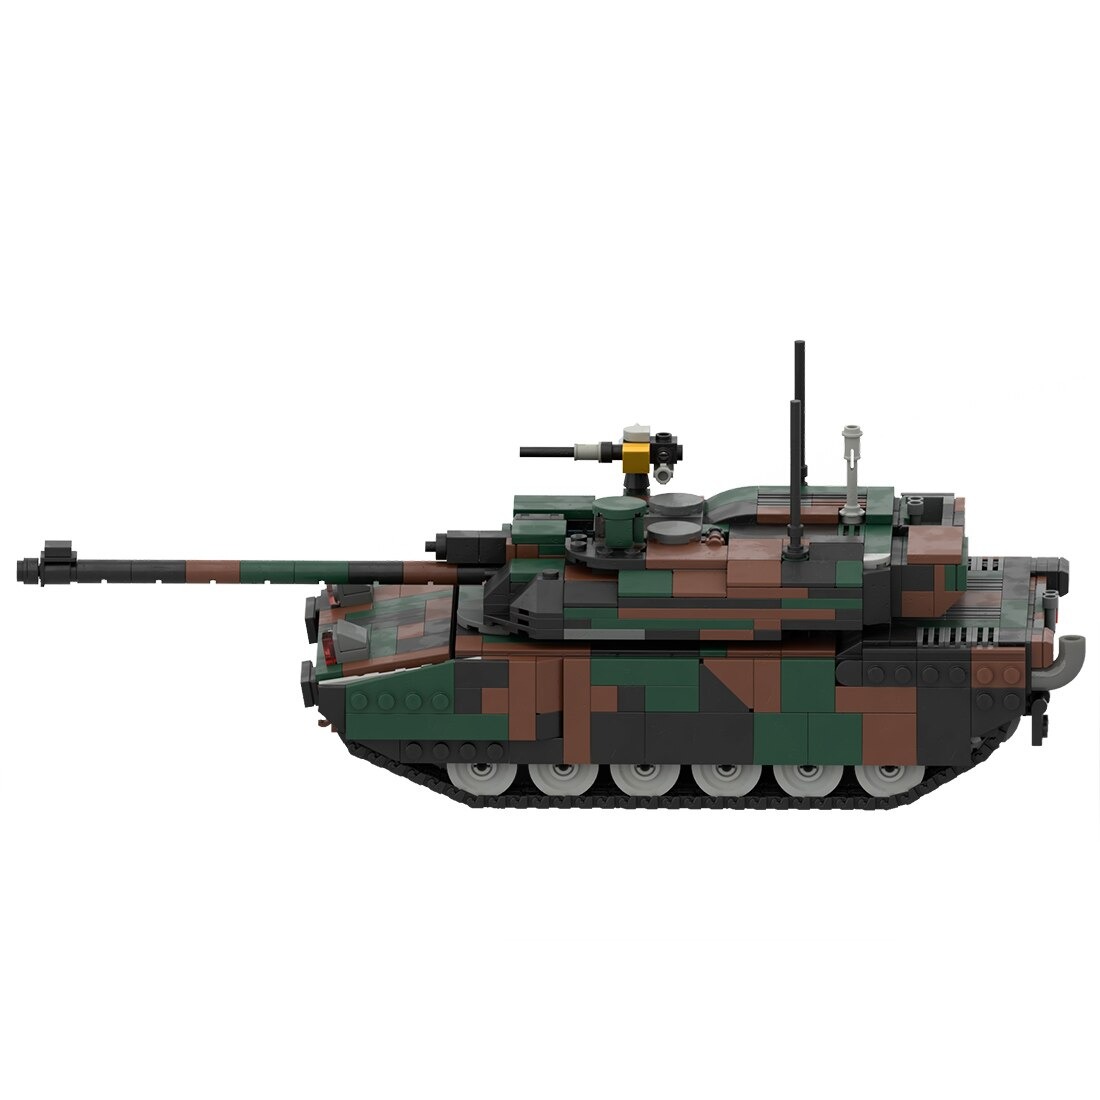 moc 34858 leclerc main battle tank model main 3